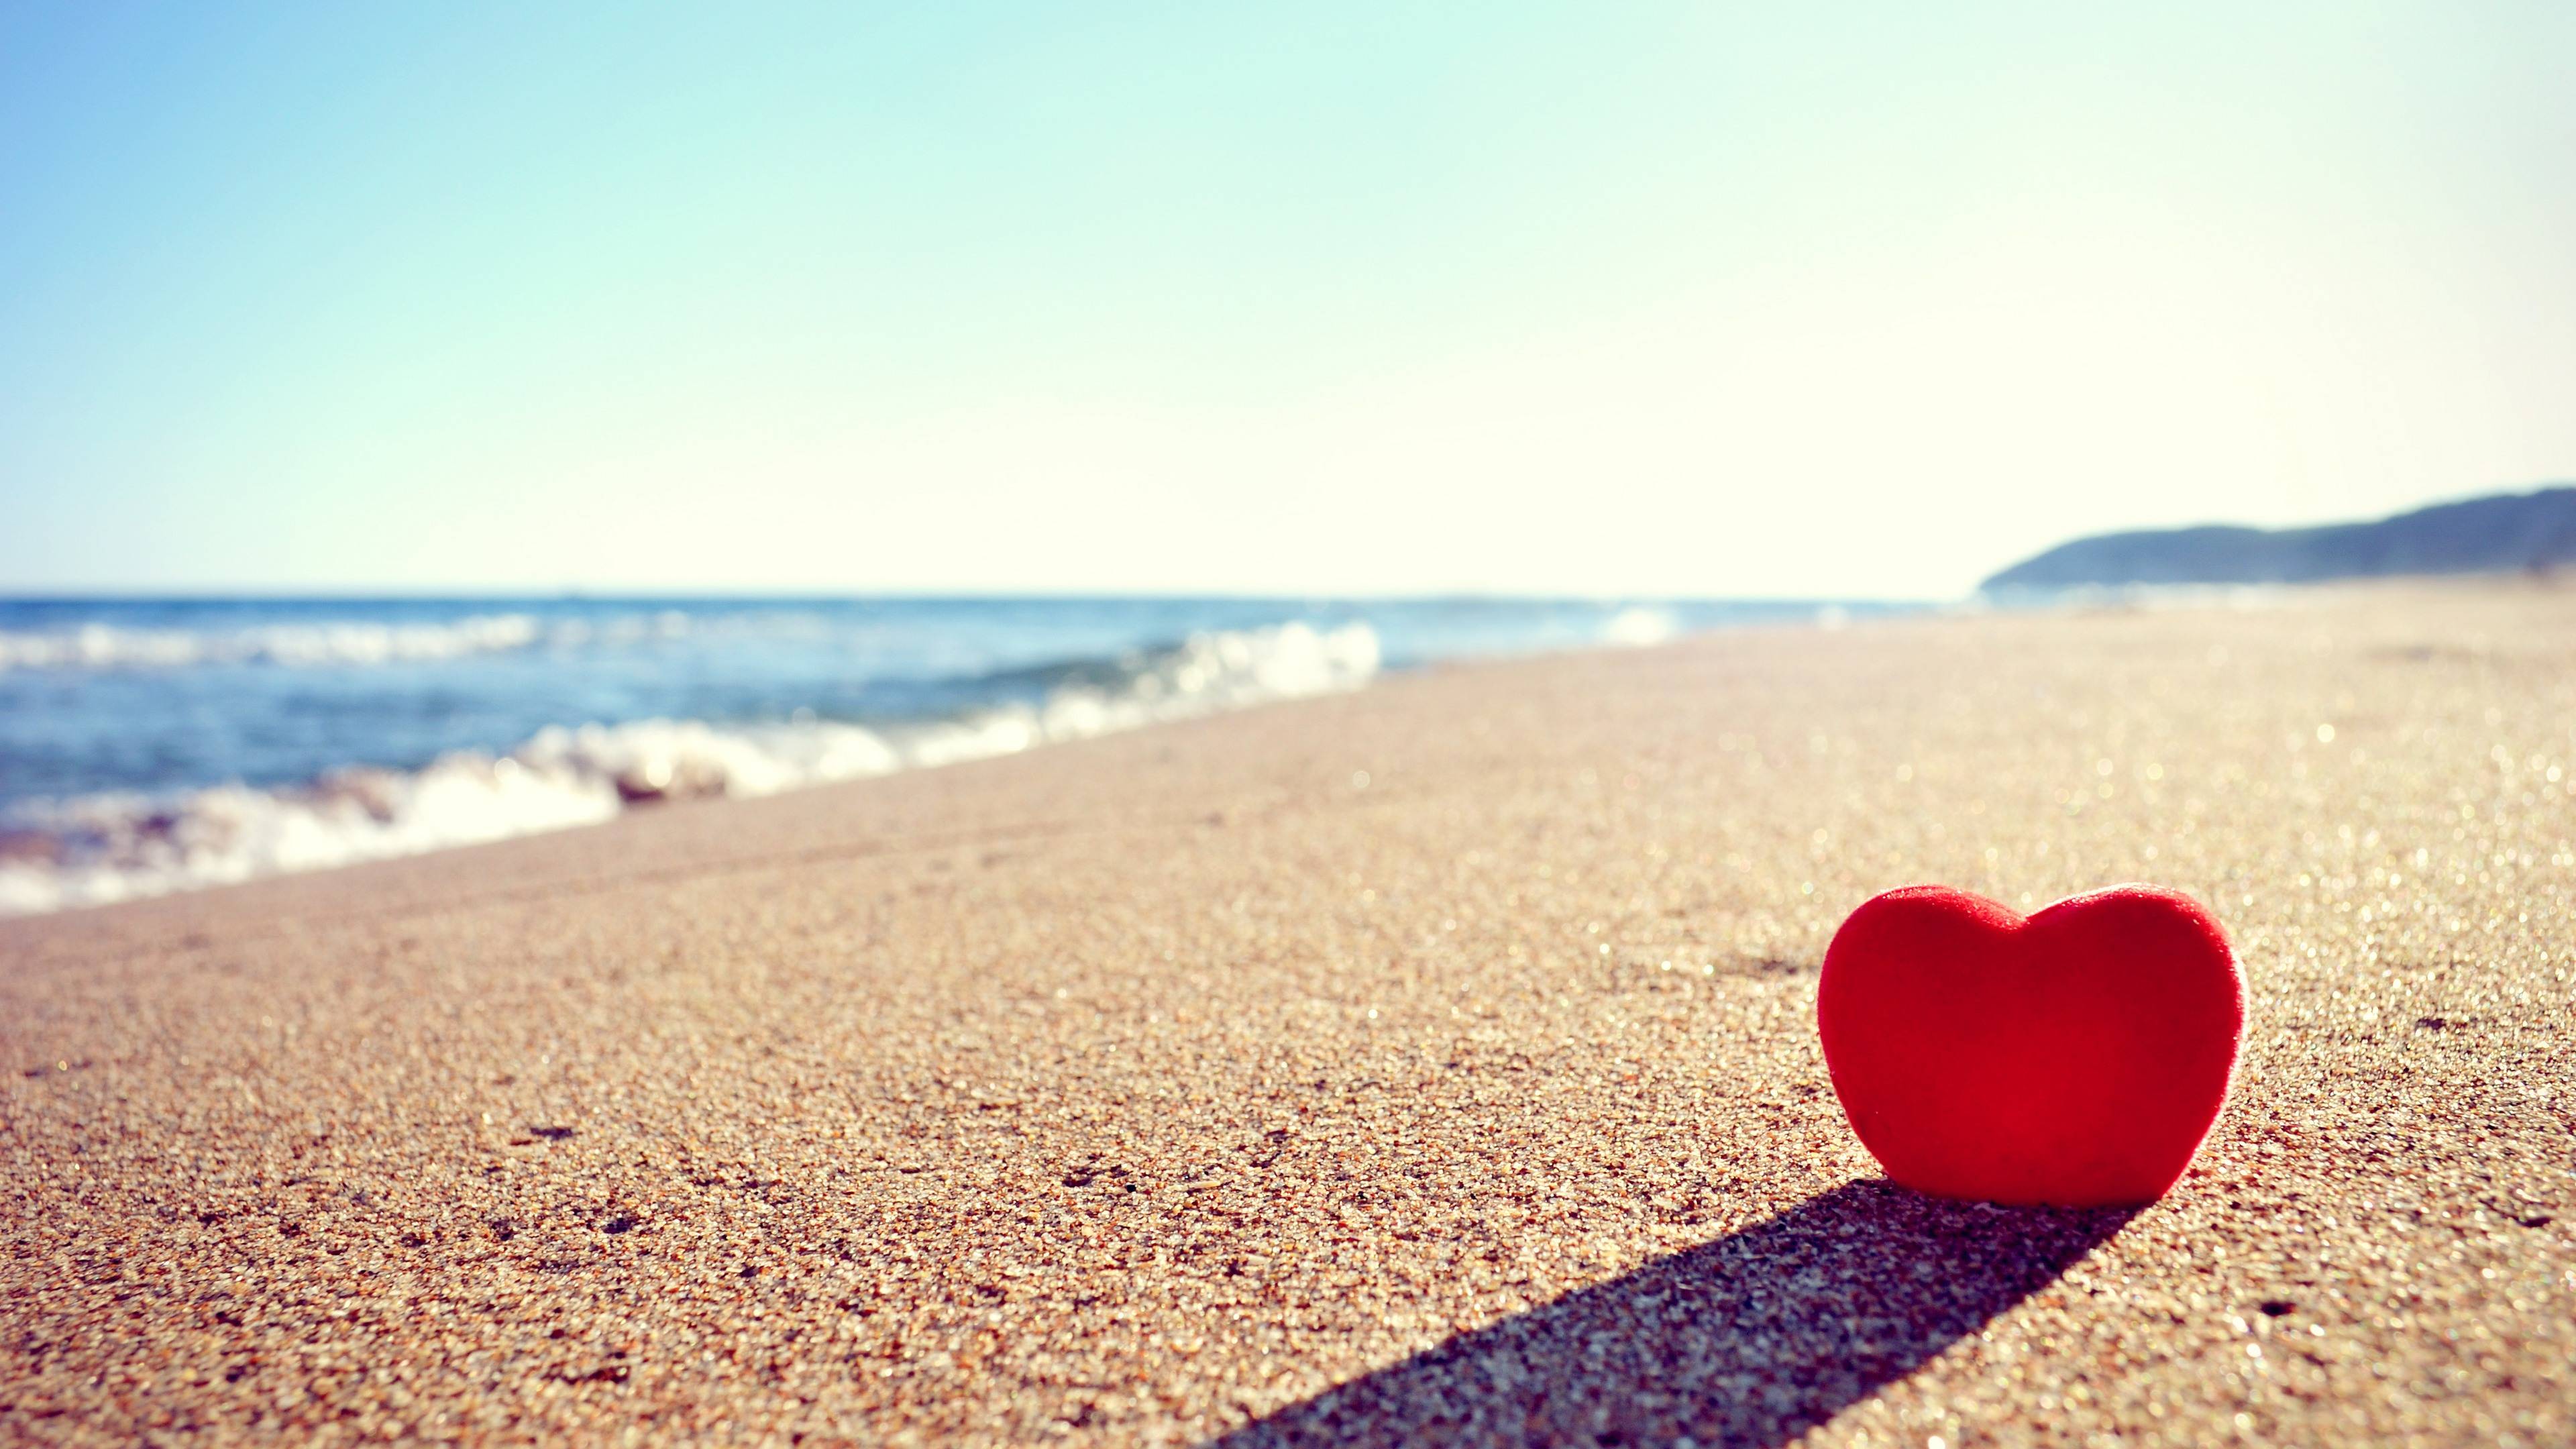 Обои сердечко на пляже море пляж на рабочий стол